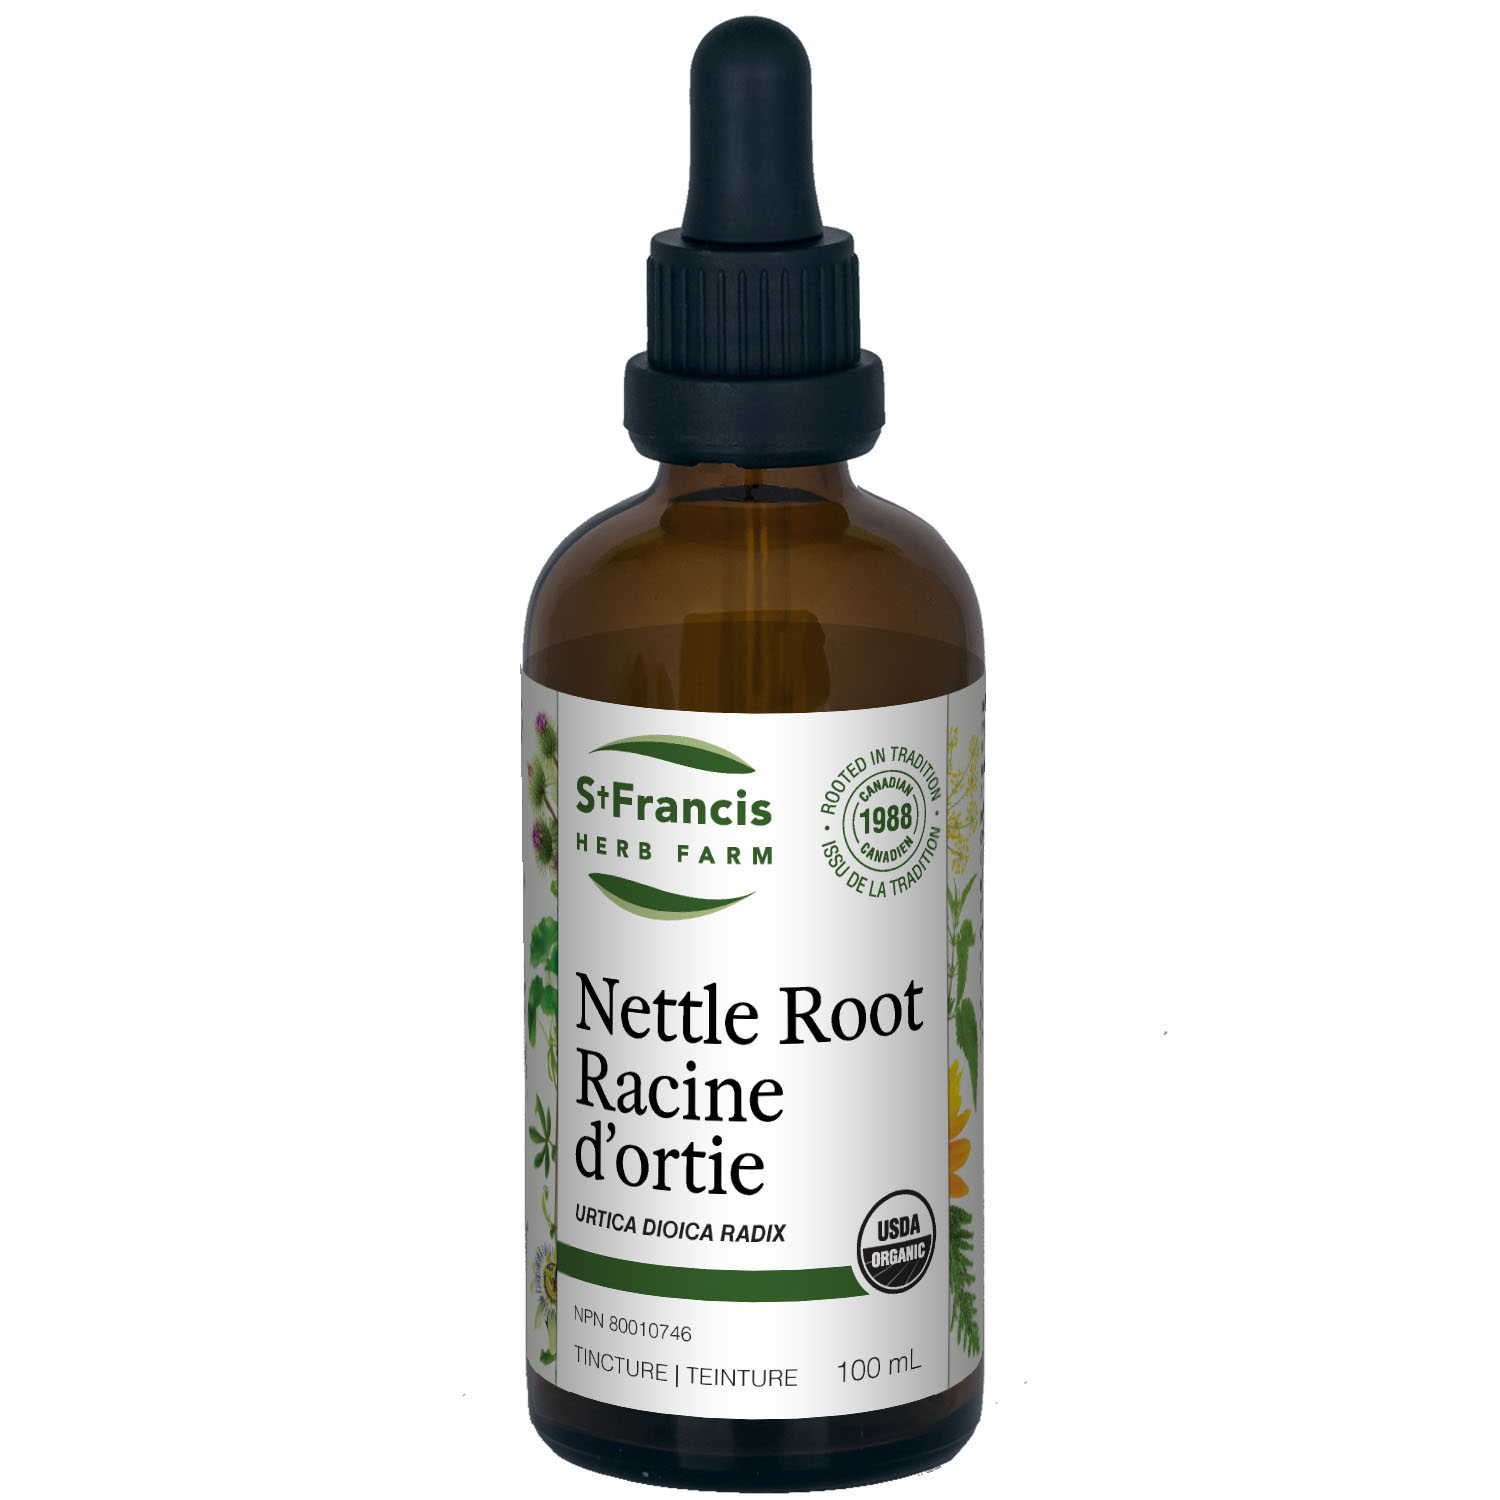 Nettle Root | Racine d'ortie